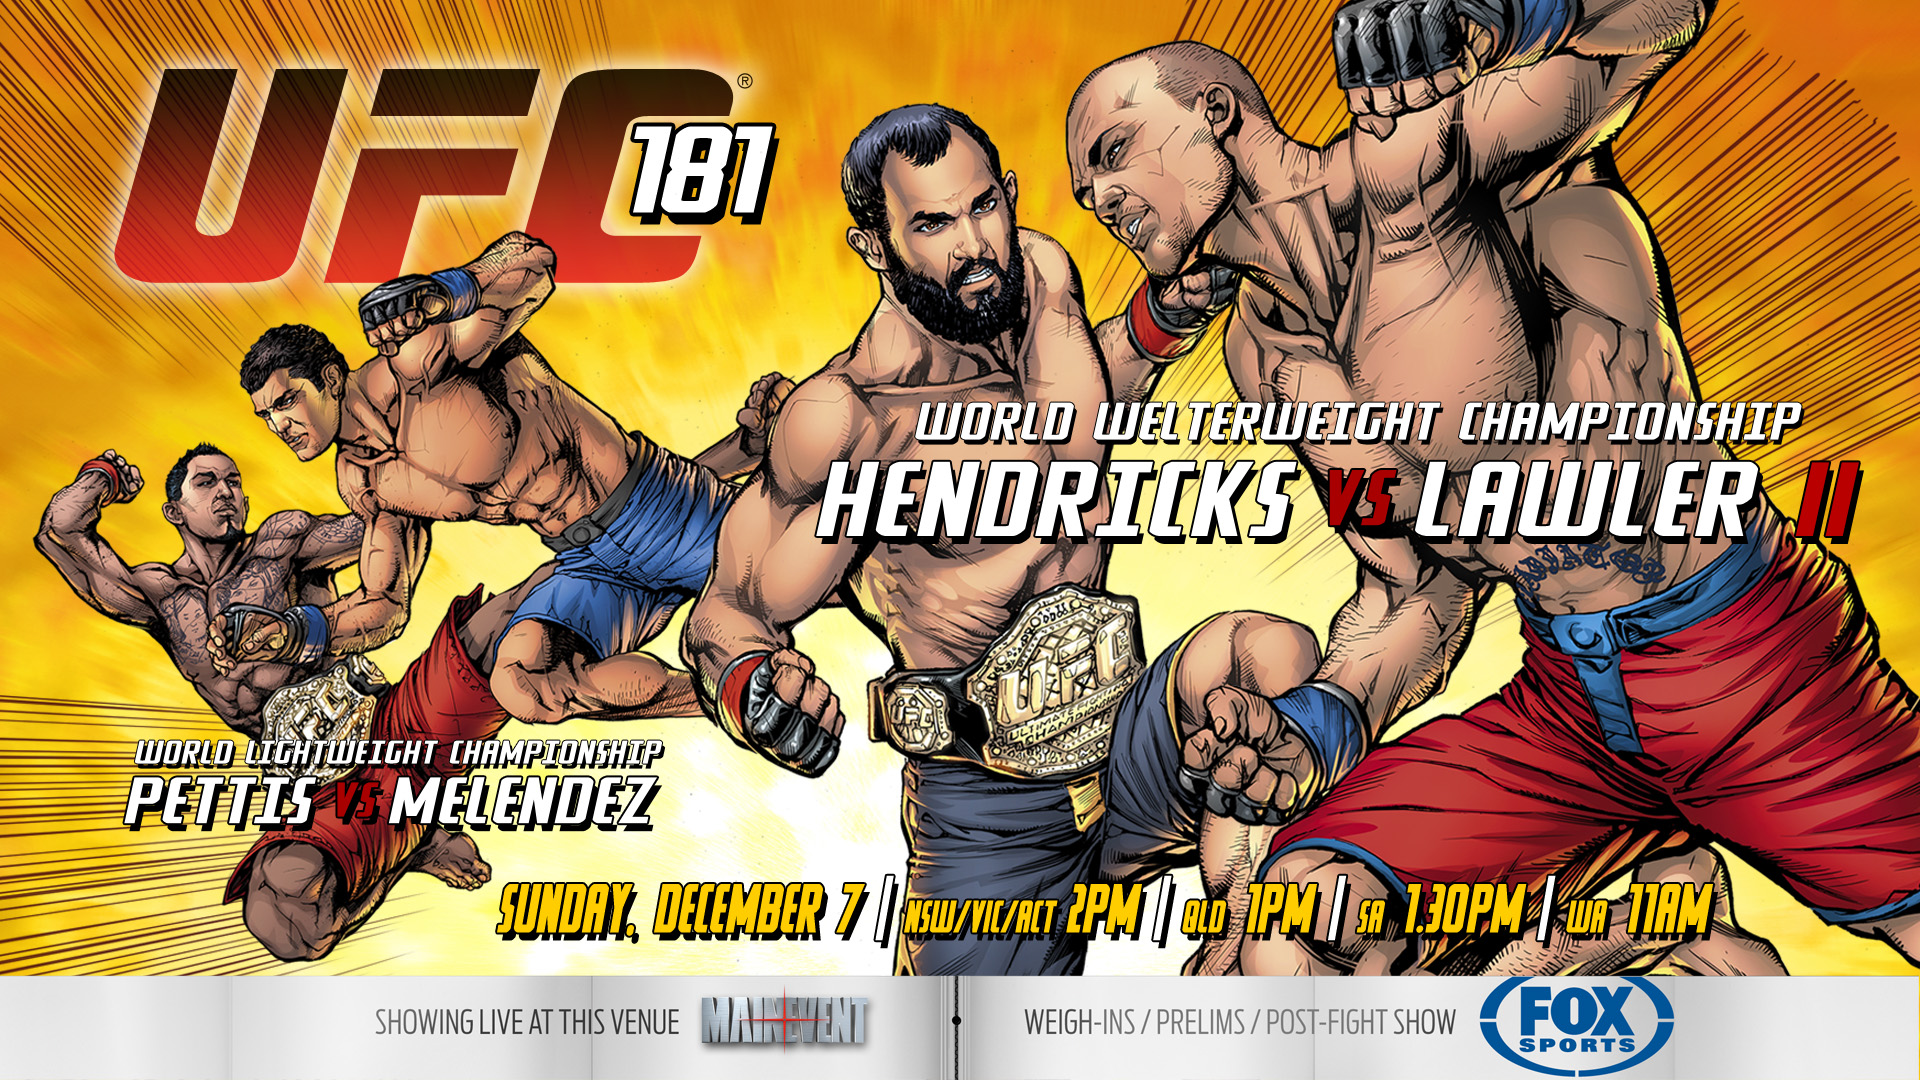 UFC 181 - Les posters et les affiches à Houston à Vegas - UFC Fans France1920 x 1080